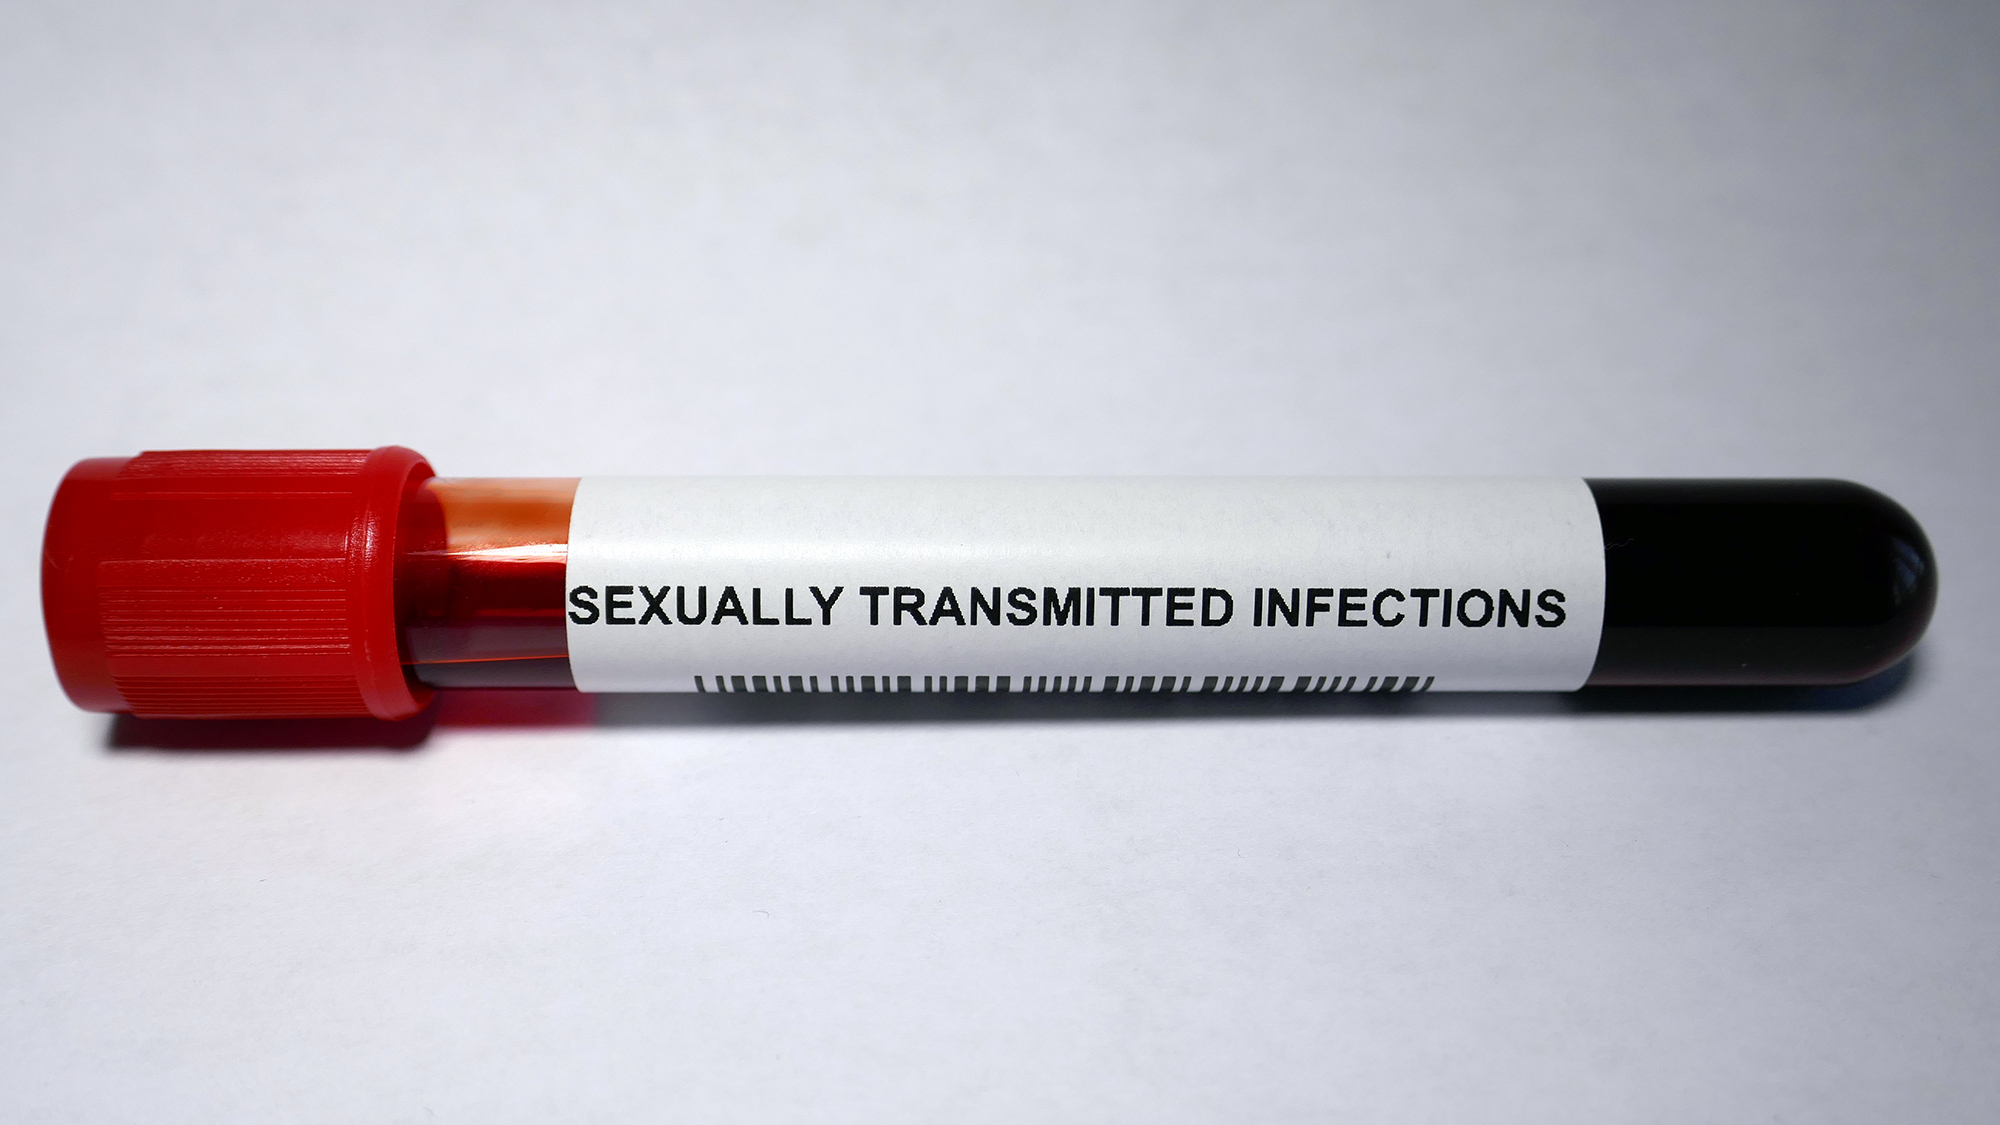 Blutprobe mit der Aufschrift "sexually transmitted infections"